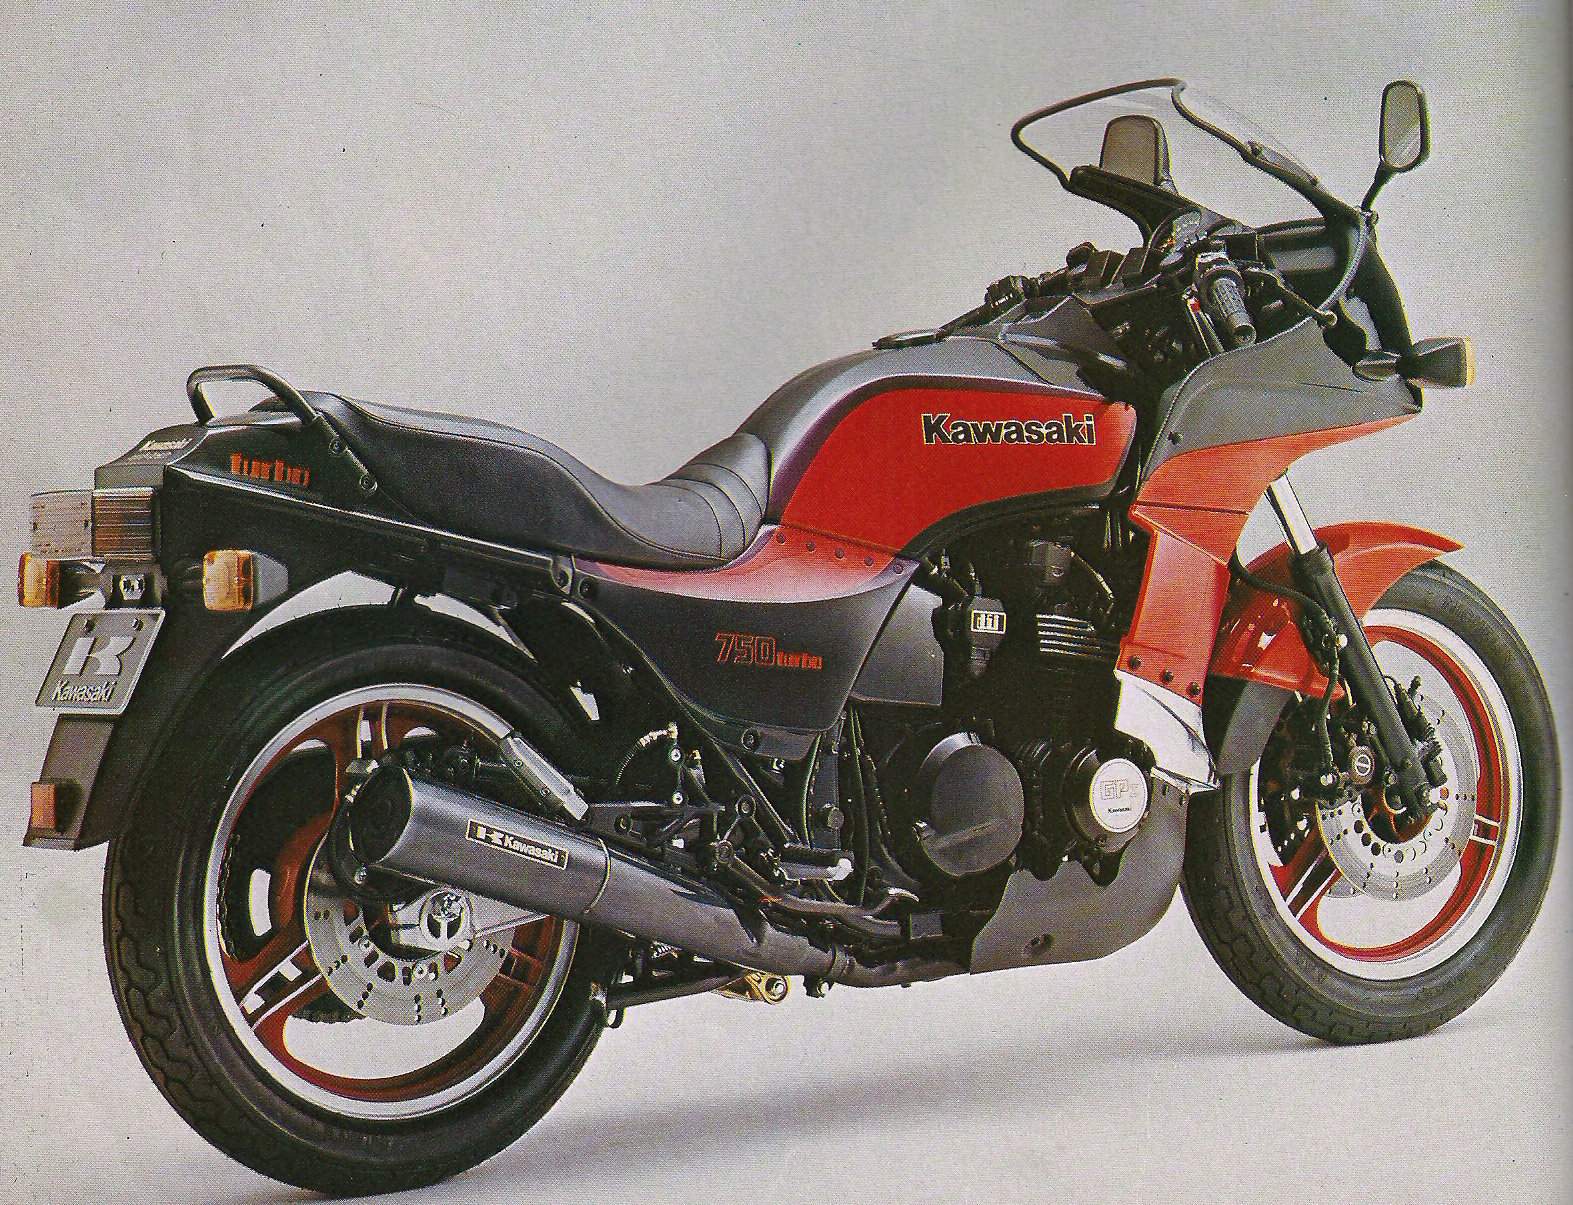 Kawasaki GPz Turbo / ZX 750-E1